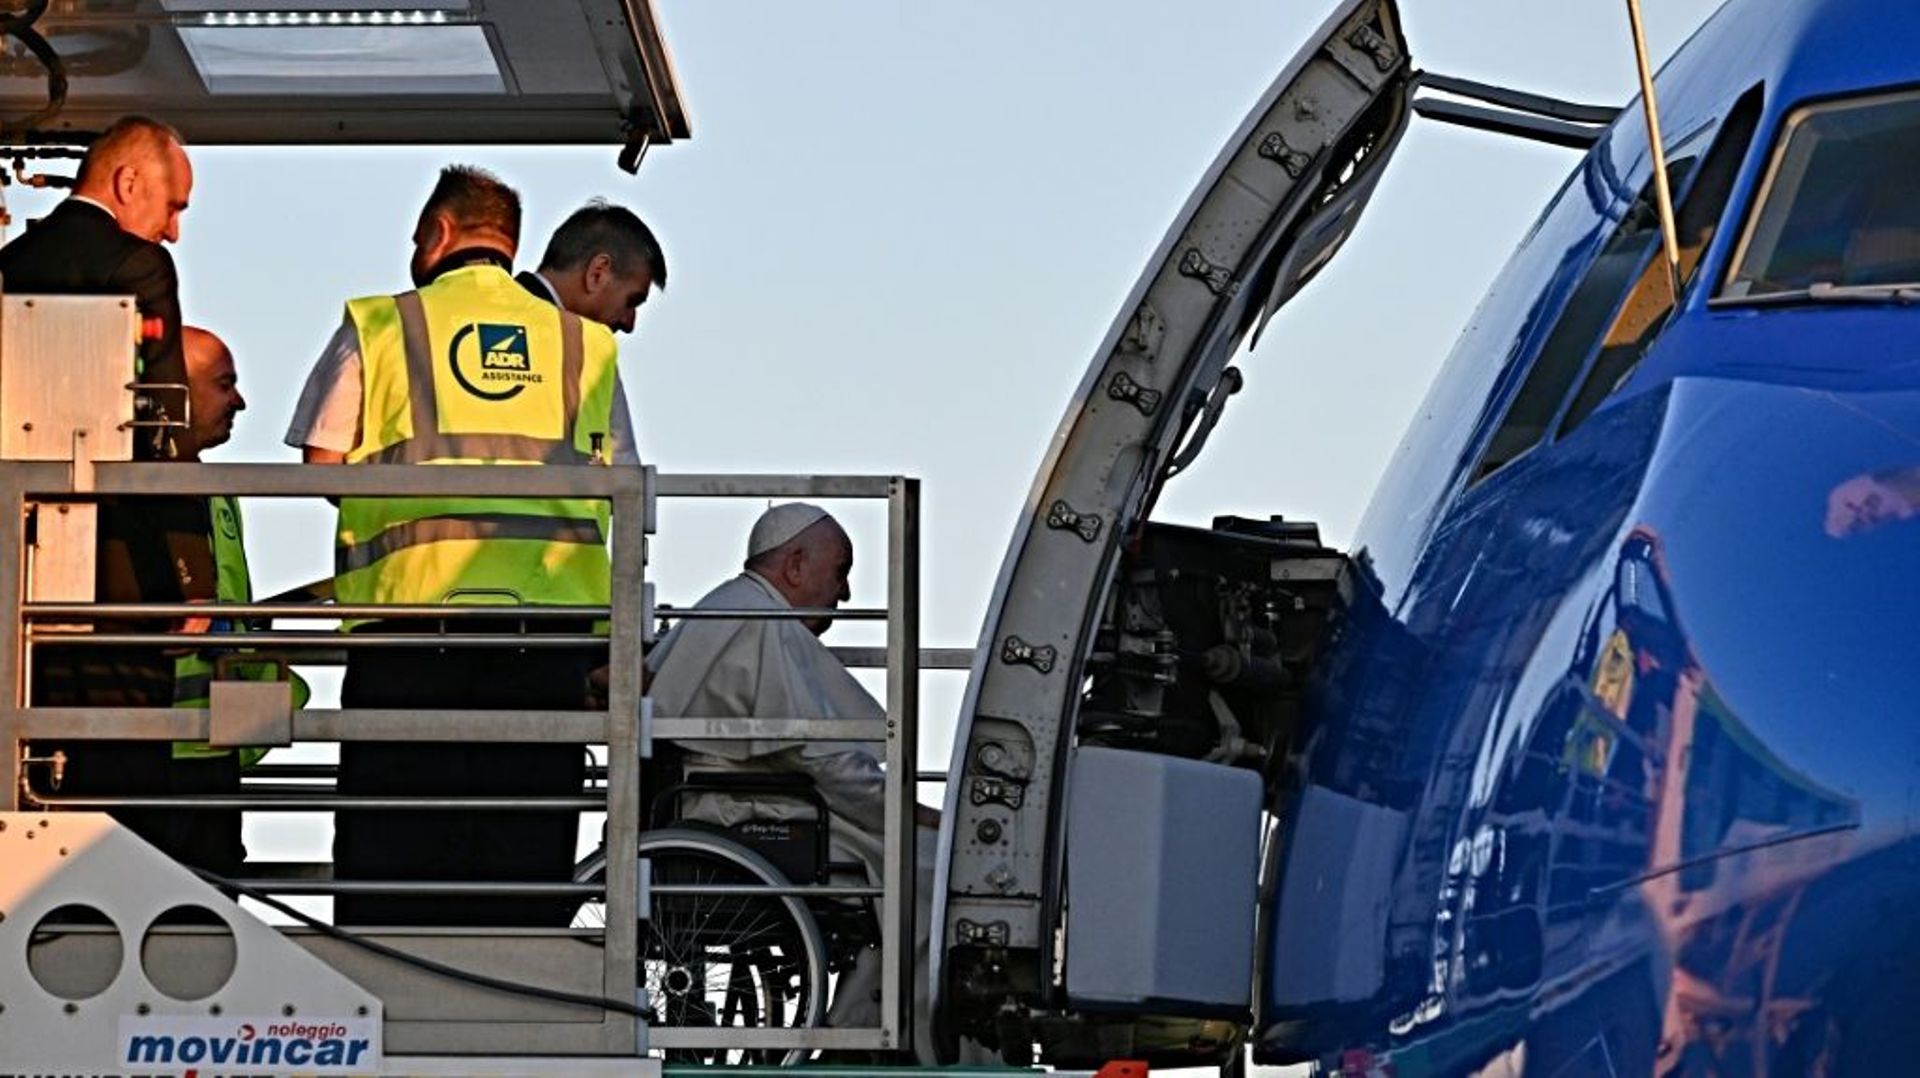 Le pape François, en fauteuil roulant, embarque à bord d'un avion pour une visite de trois jours au Kazakhstan, le 13 septembre 2022 à l'aéroport Fiumicino de Rome